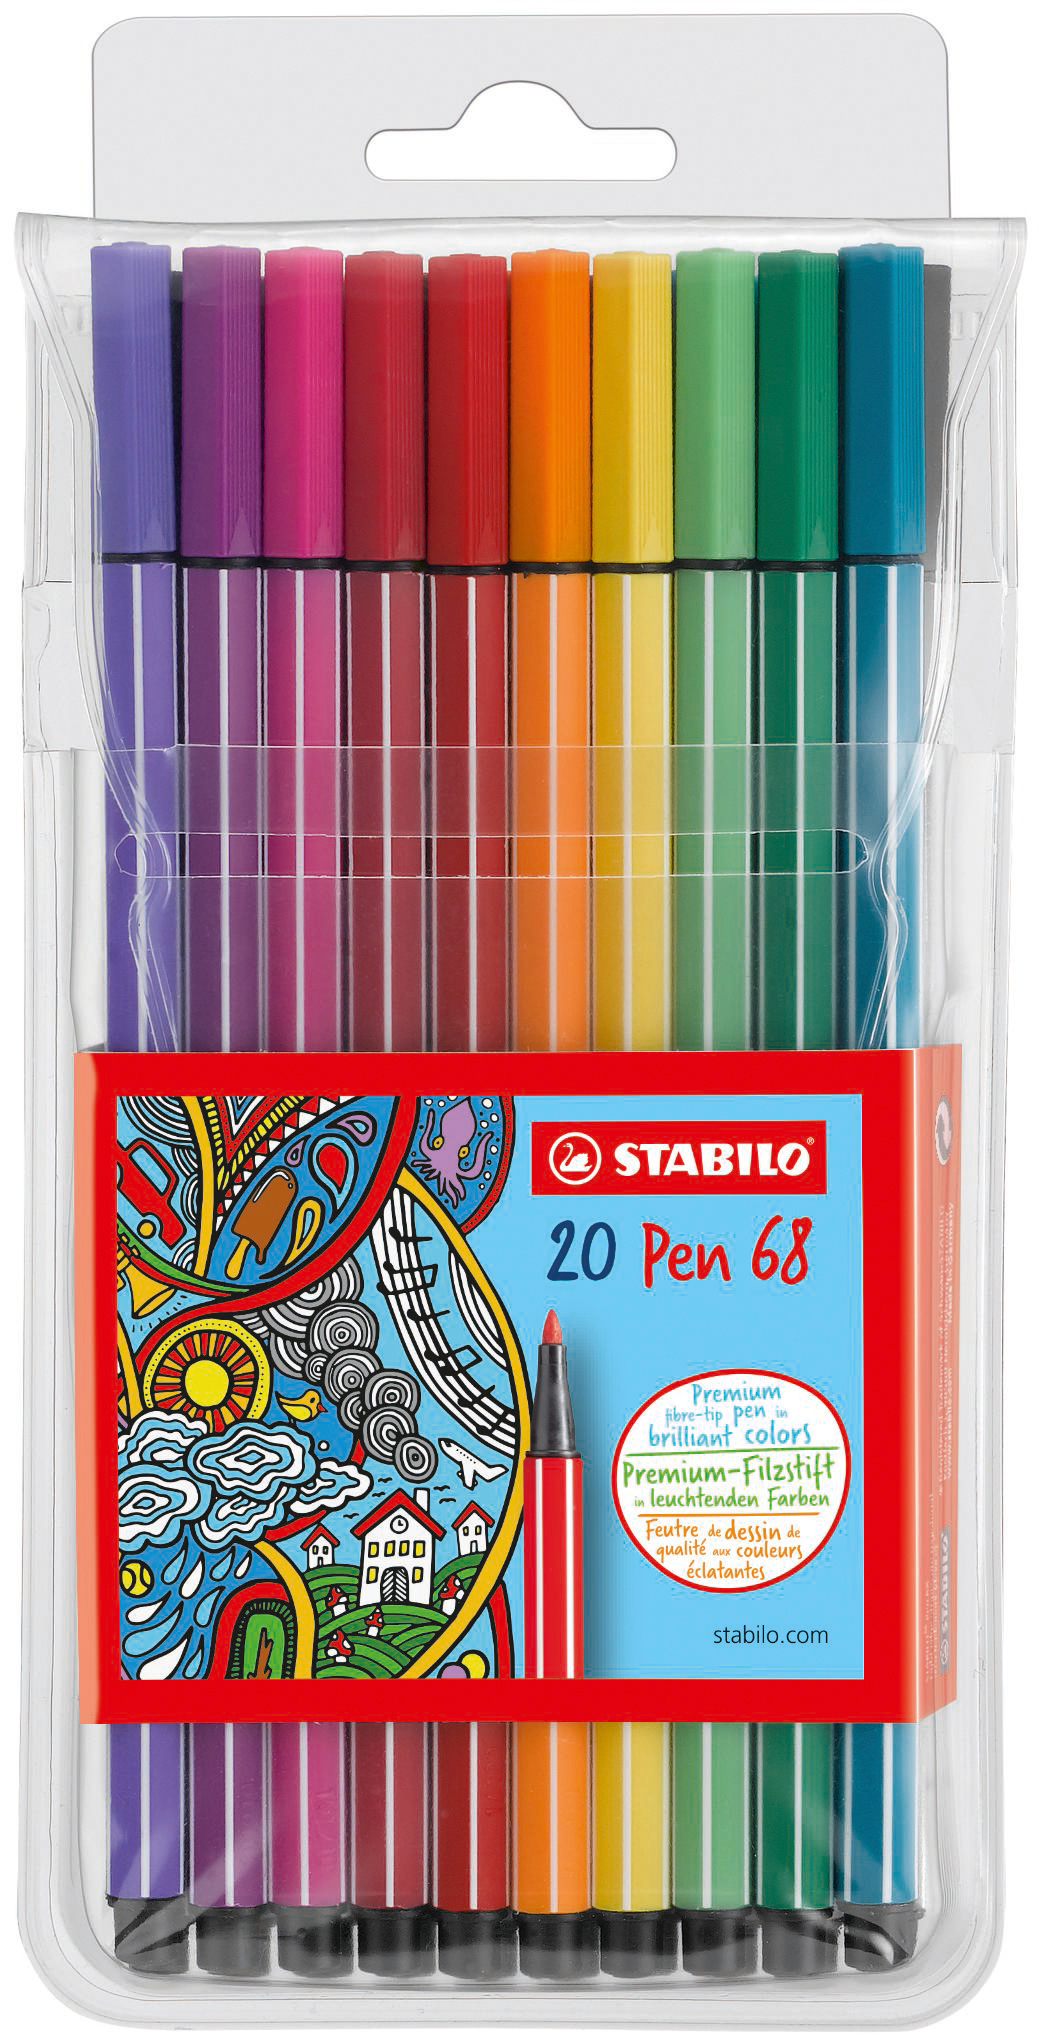 STABILO Stylo Fibre Pen 68 1mm 68/20 20 couleurs ass.